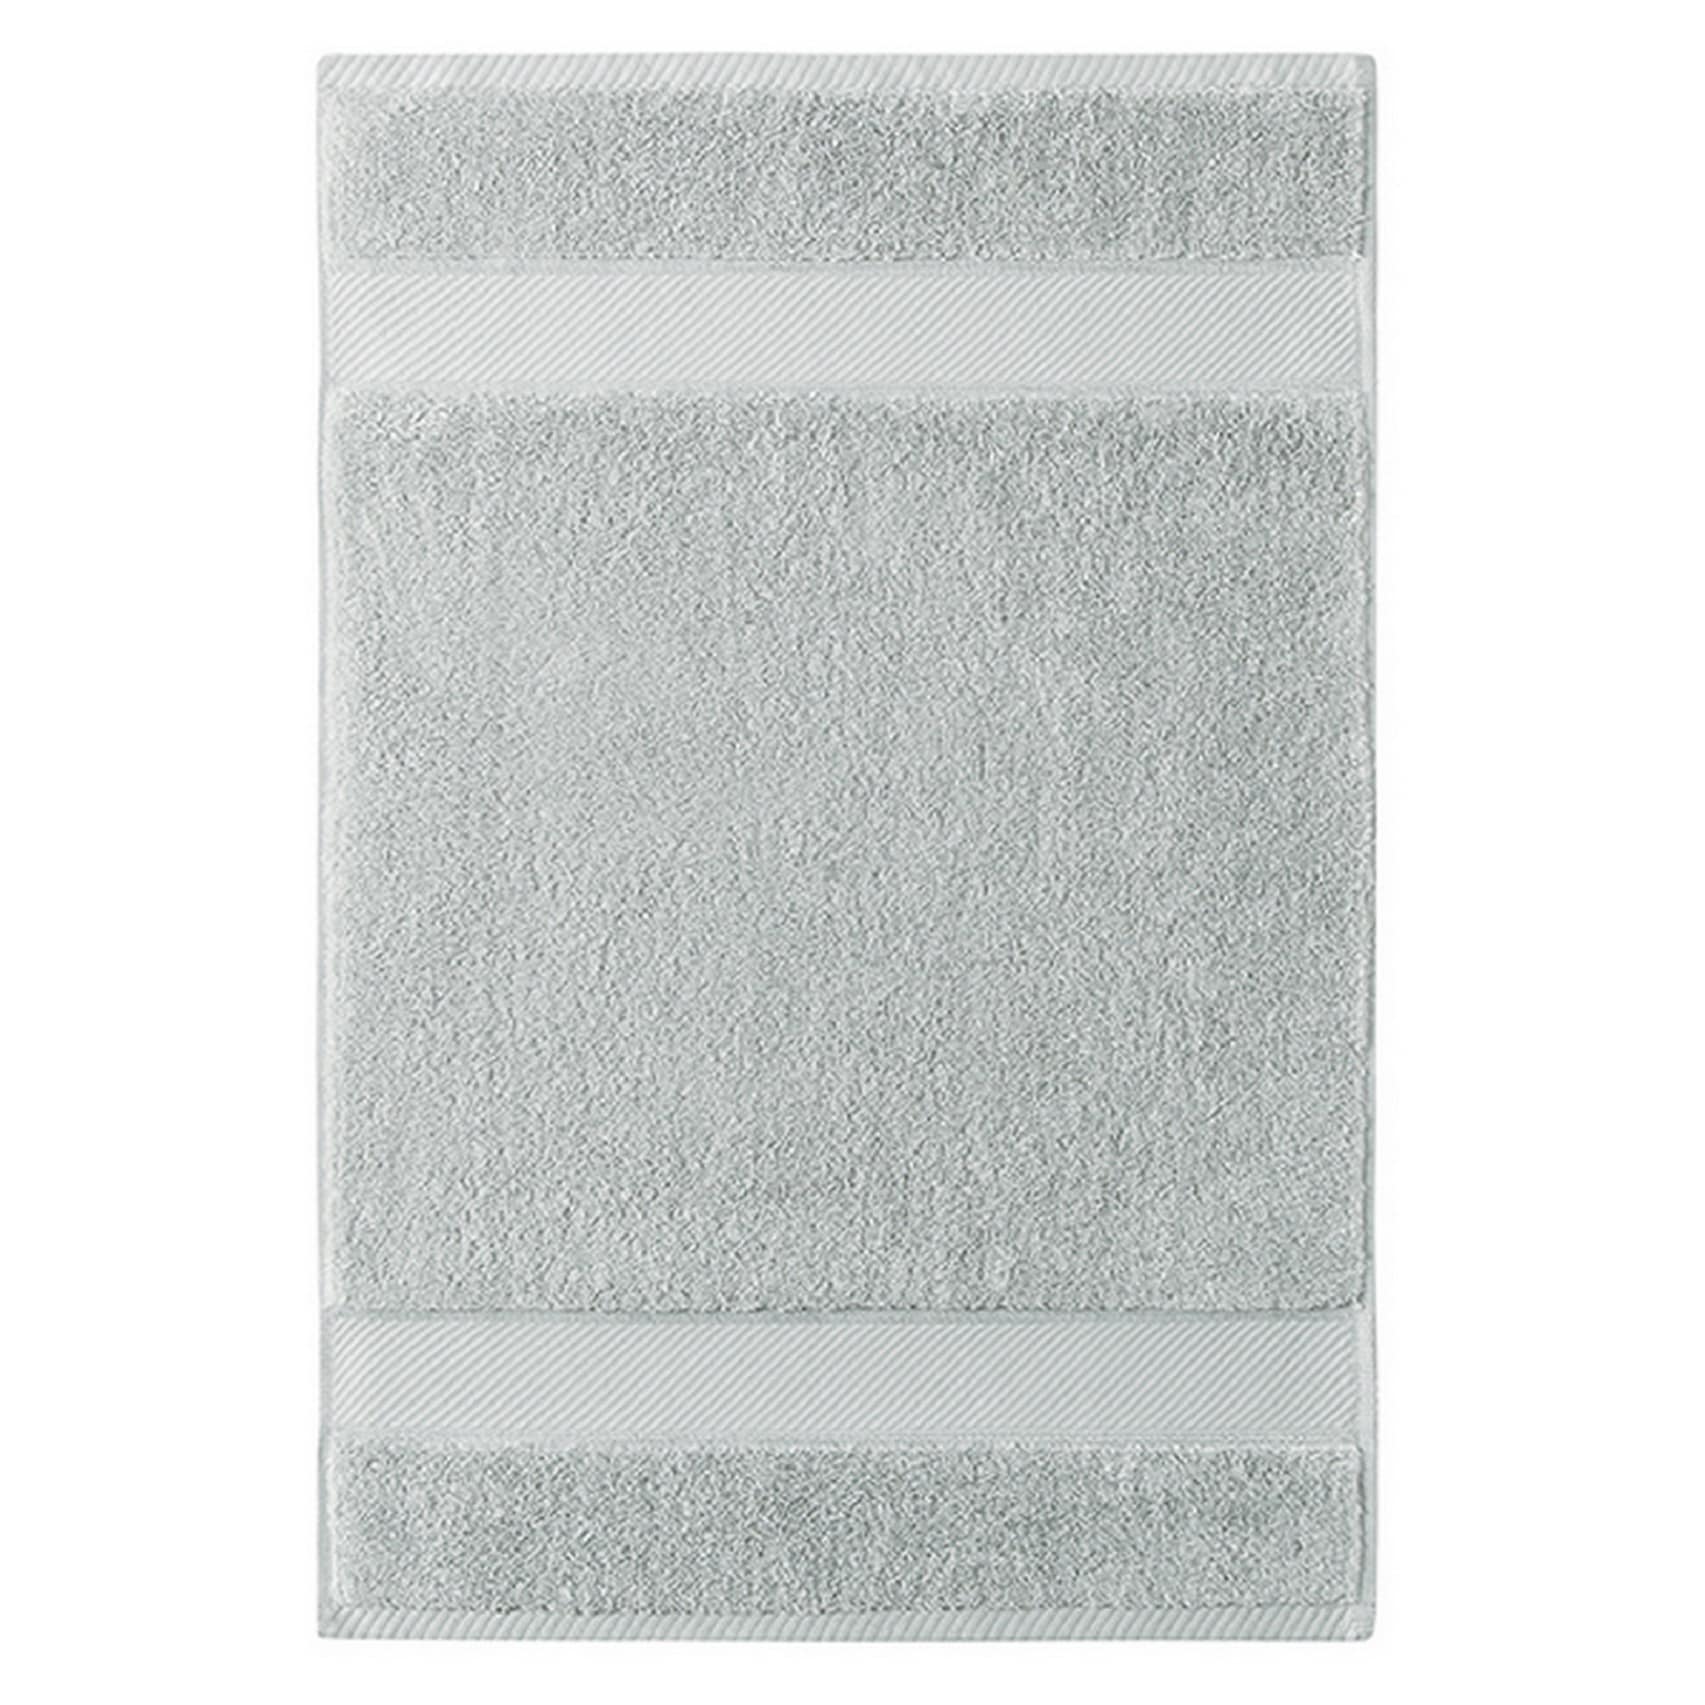  Charisma New Bath Sheet Bundle Set  2 Luxury Bath Sheets 35 W  X 70 L (White) : Home & Kitchen